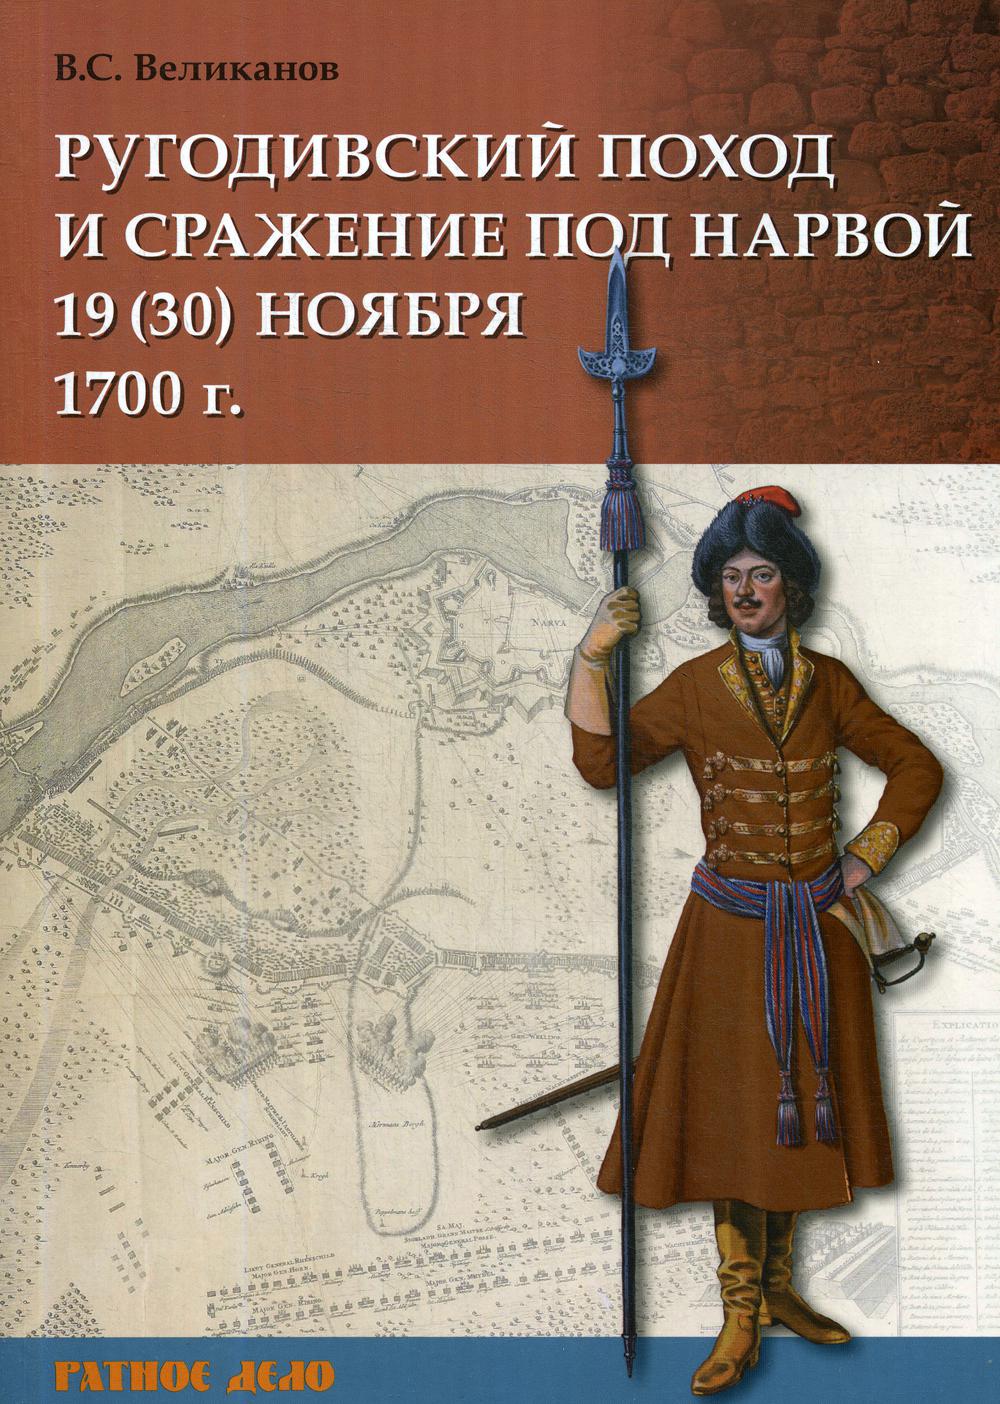 фото Книга ругодивский поход и сражение под нарвой 19 (30) ноября 1700 г русские витязи